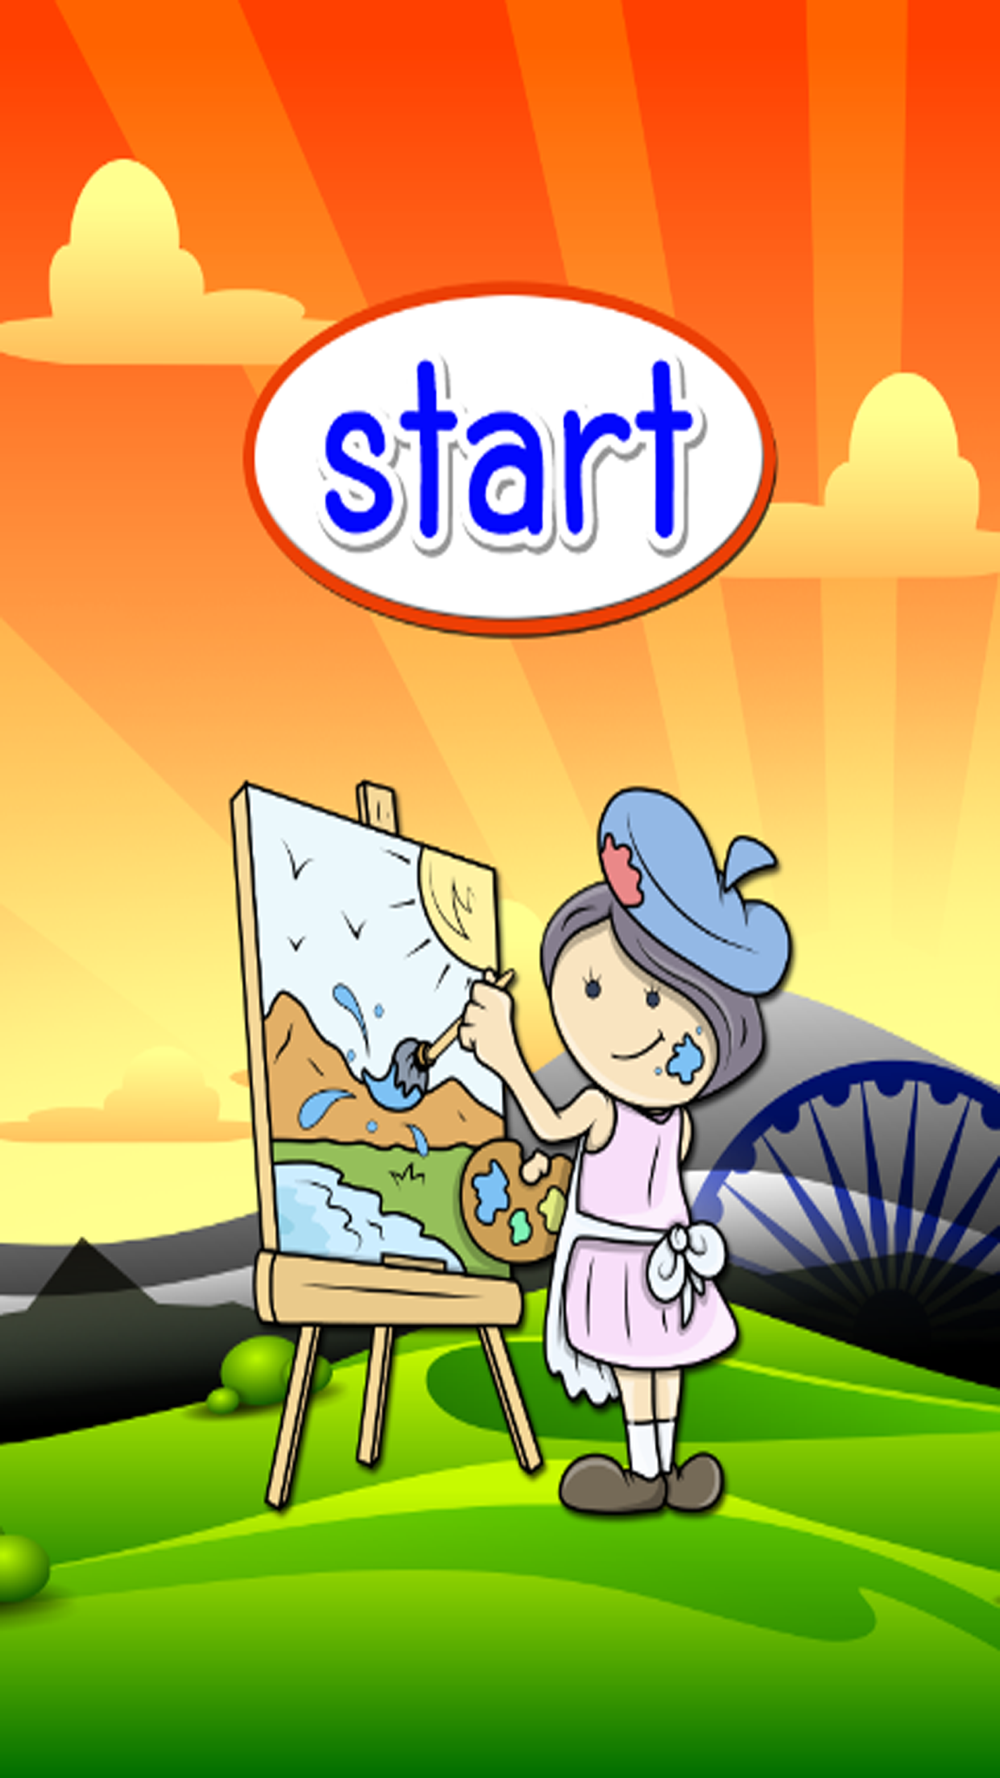 キッズv 2のための英語 語彙や会話が 楽しい言語学習教育ゲームが含ま Free Download App For Iphone Steprimo Com